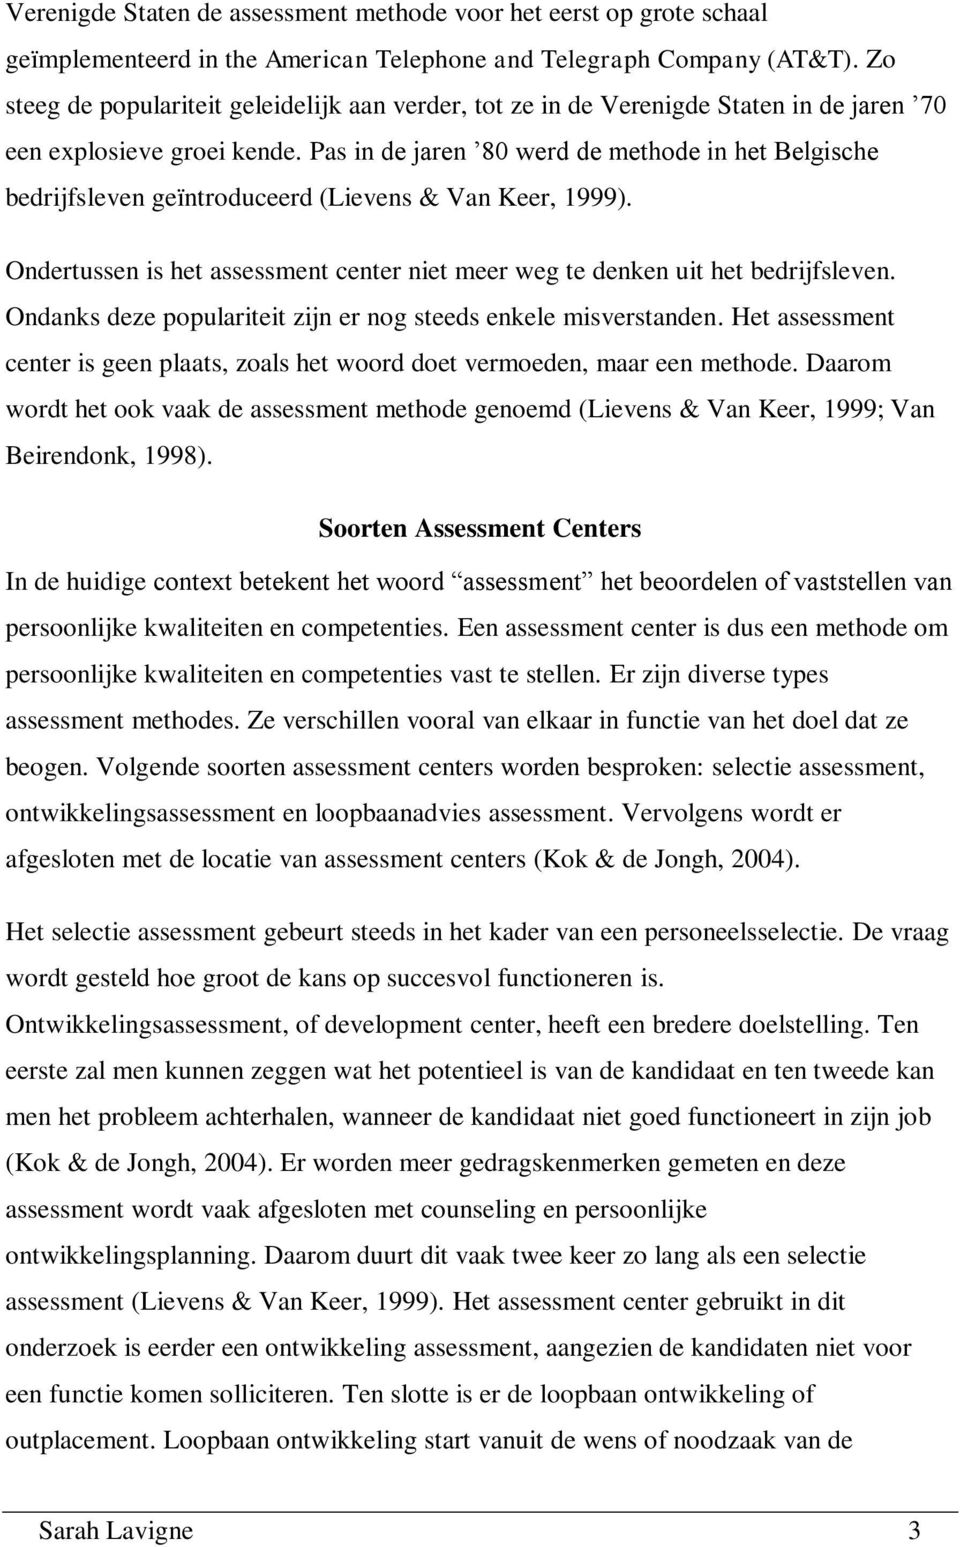 Pas in de jaren 80 werd de methode in het Belgische bedrijfsleven geïntroduceerd (Lievens & Van Keer, 1999). Ondertussen is het assessment center niet meer weg te denken uit het bedrijfsleven.